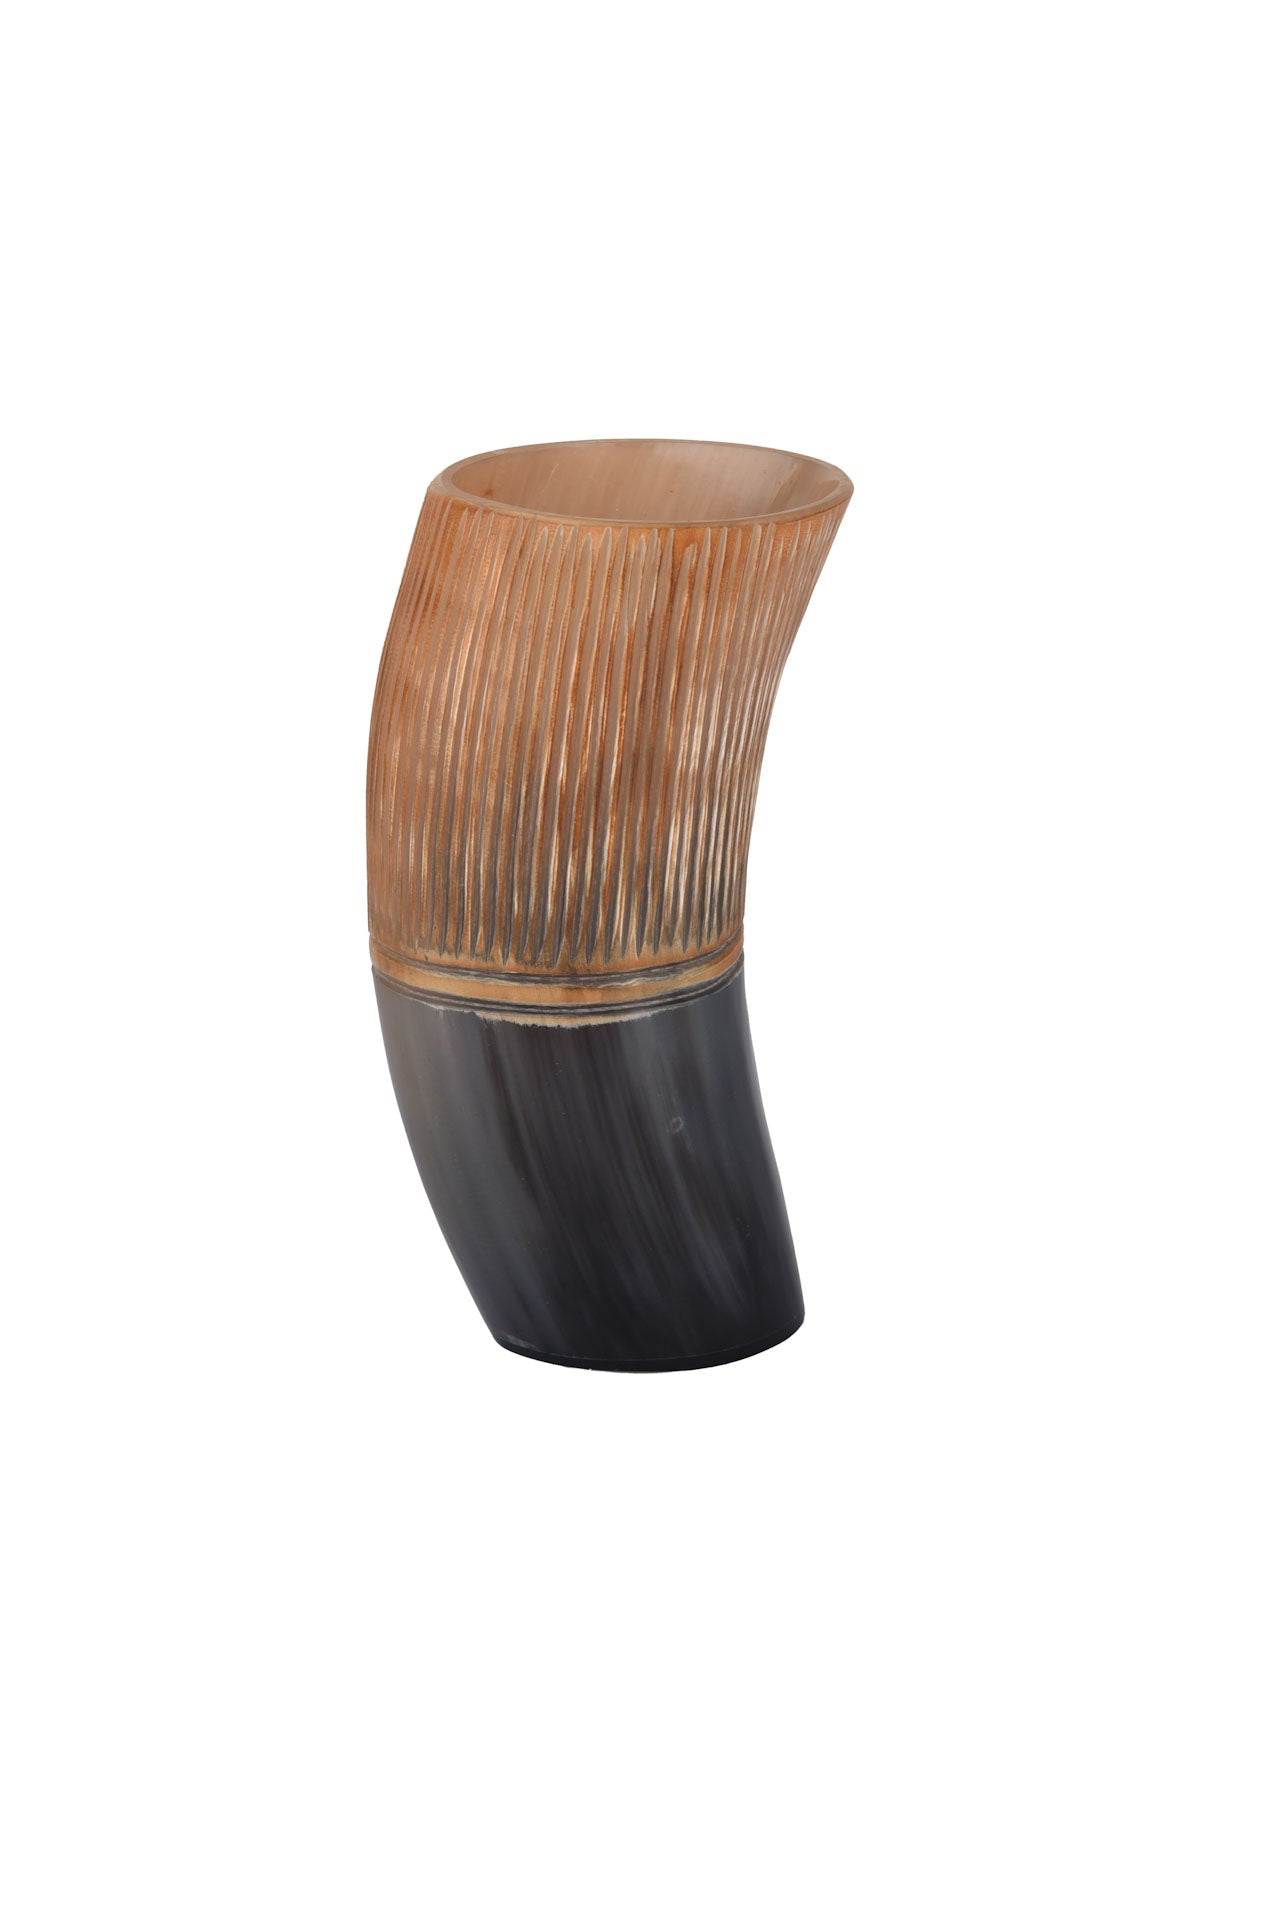 Striped Viking Drinking Horn Mug - 6" Ox Horn Beaker for Mead & Ale